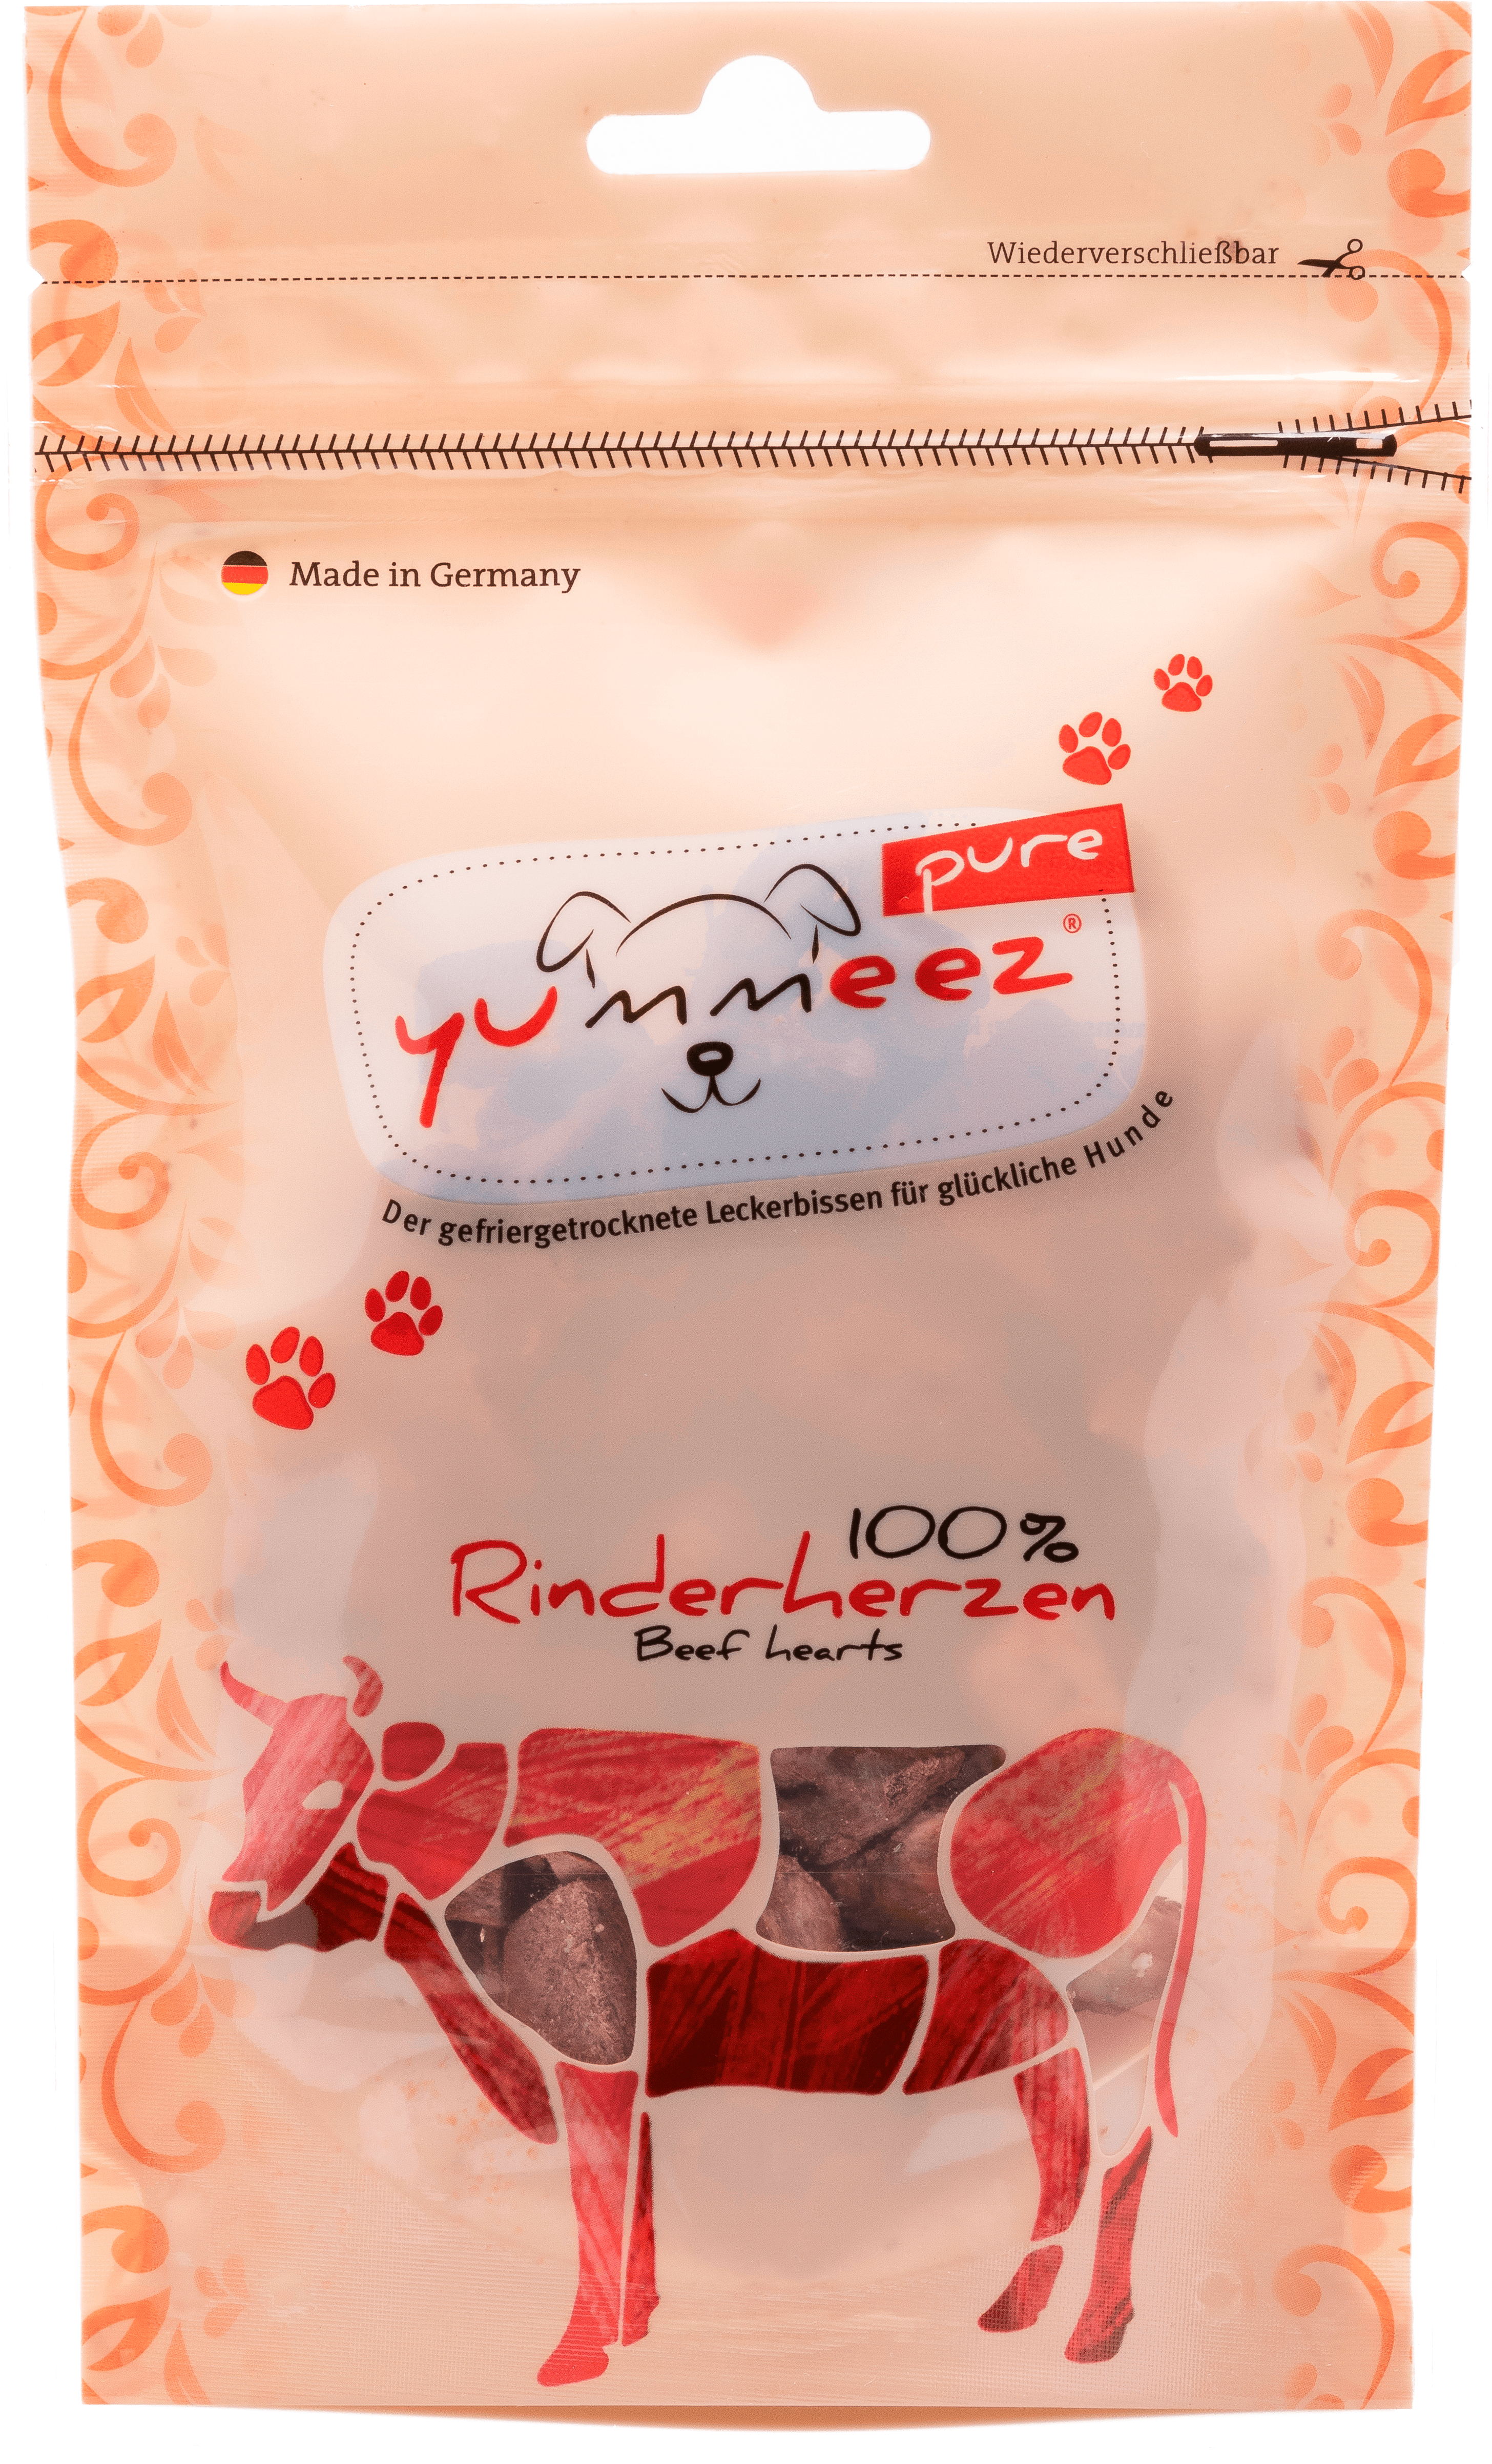 yummeez pure - Rinderherzen 35g